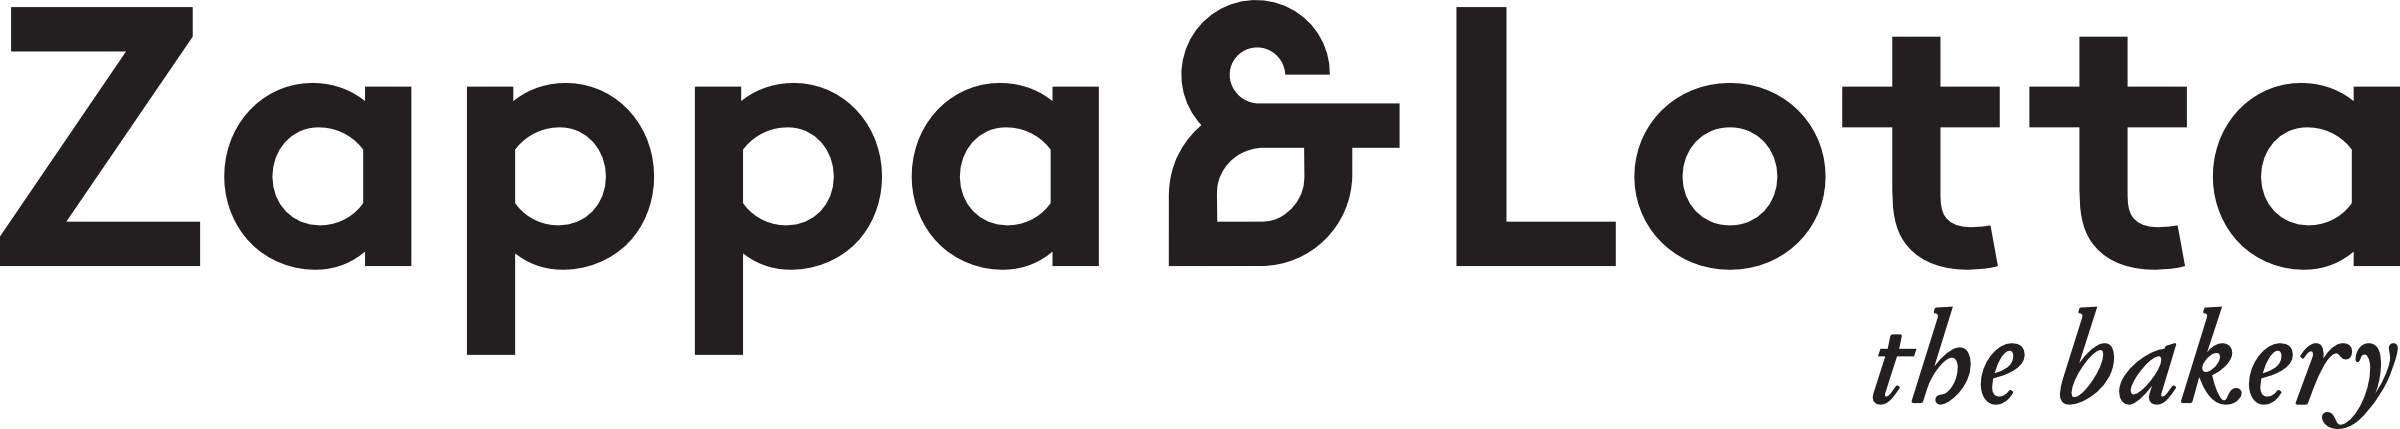 ZAL_Logo-Claim_transparent_large__f01